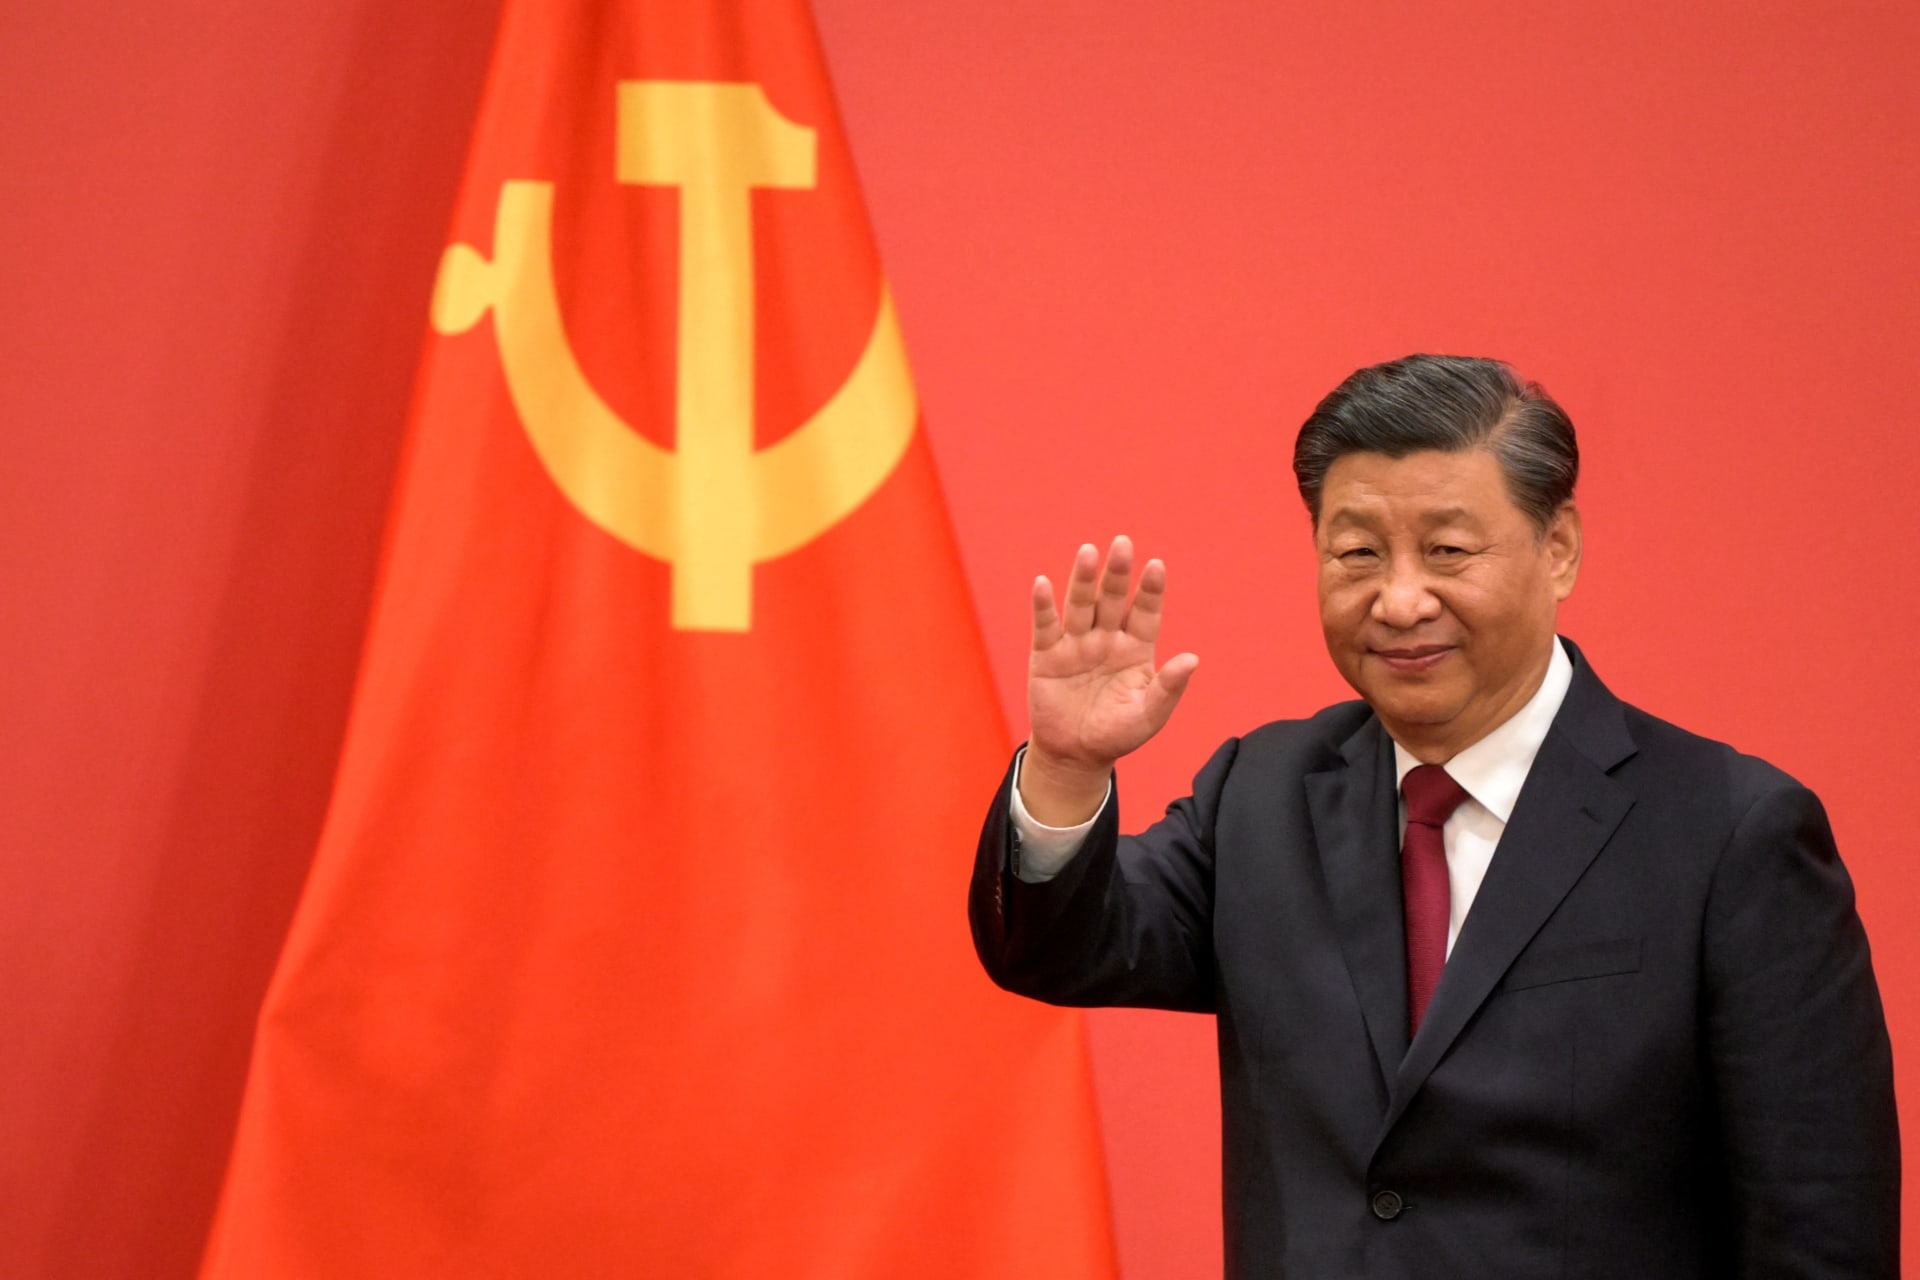 الرئيس الصيني يشجع الشركات على كسر الحواجز التكنولوجية